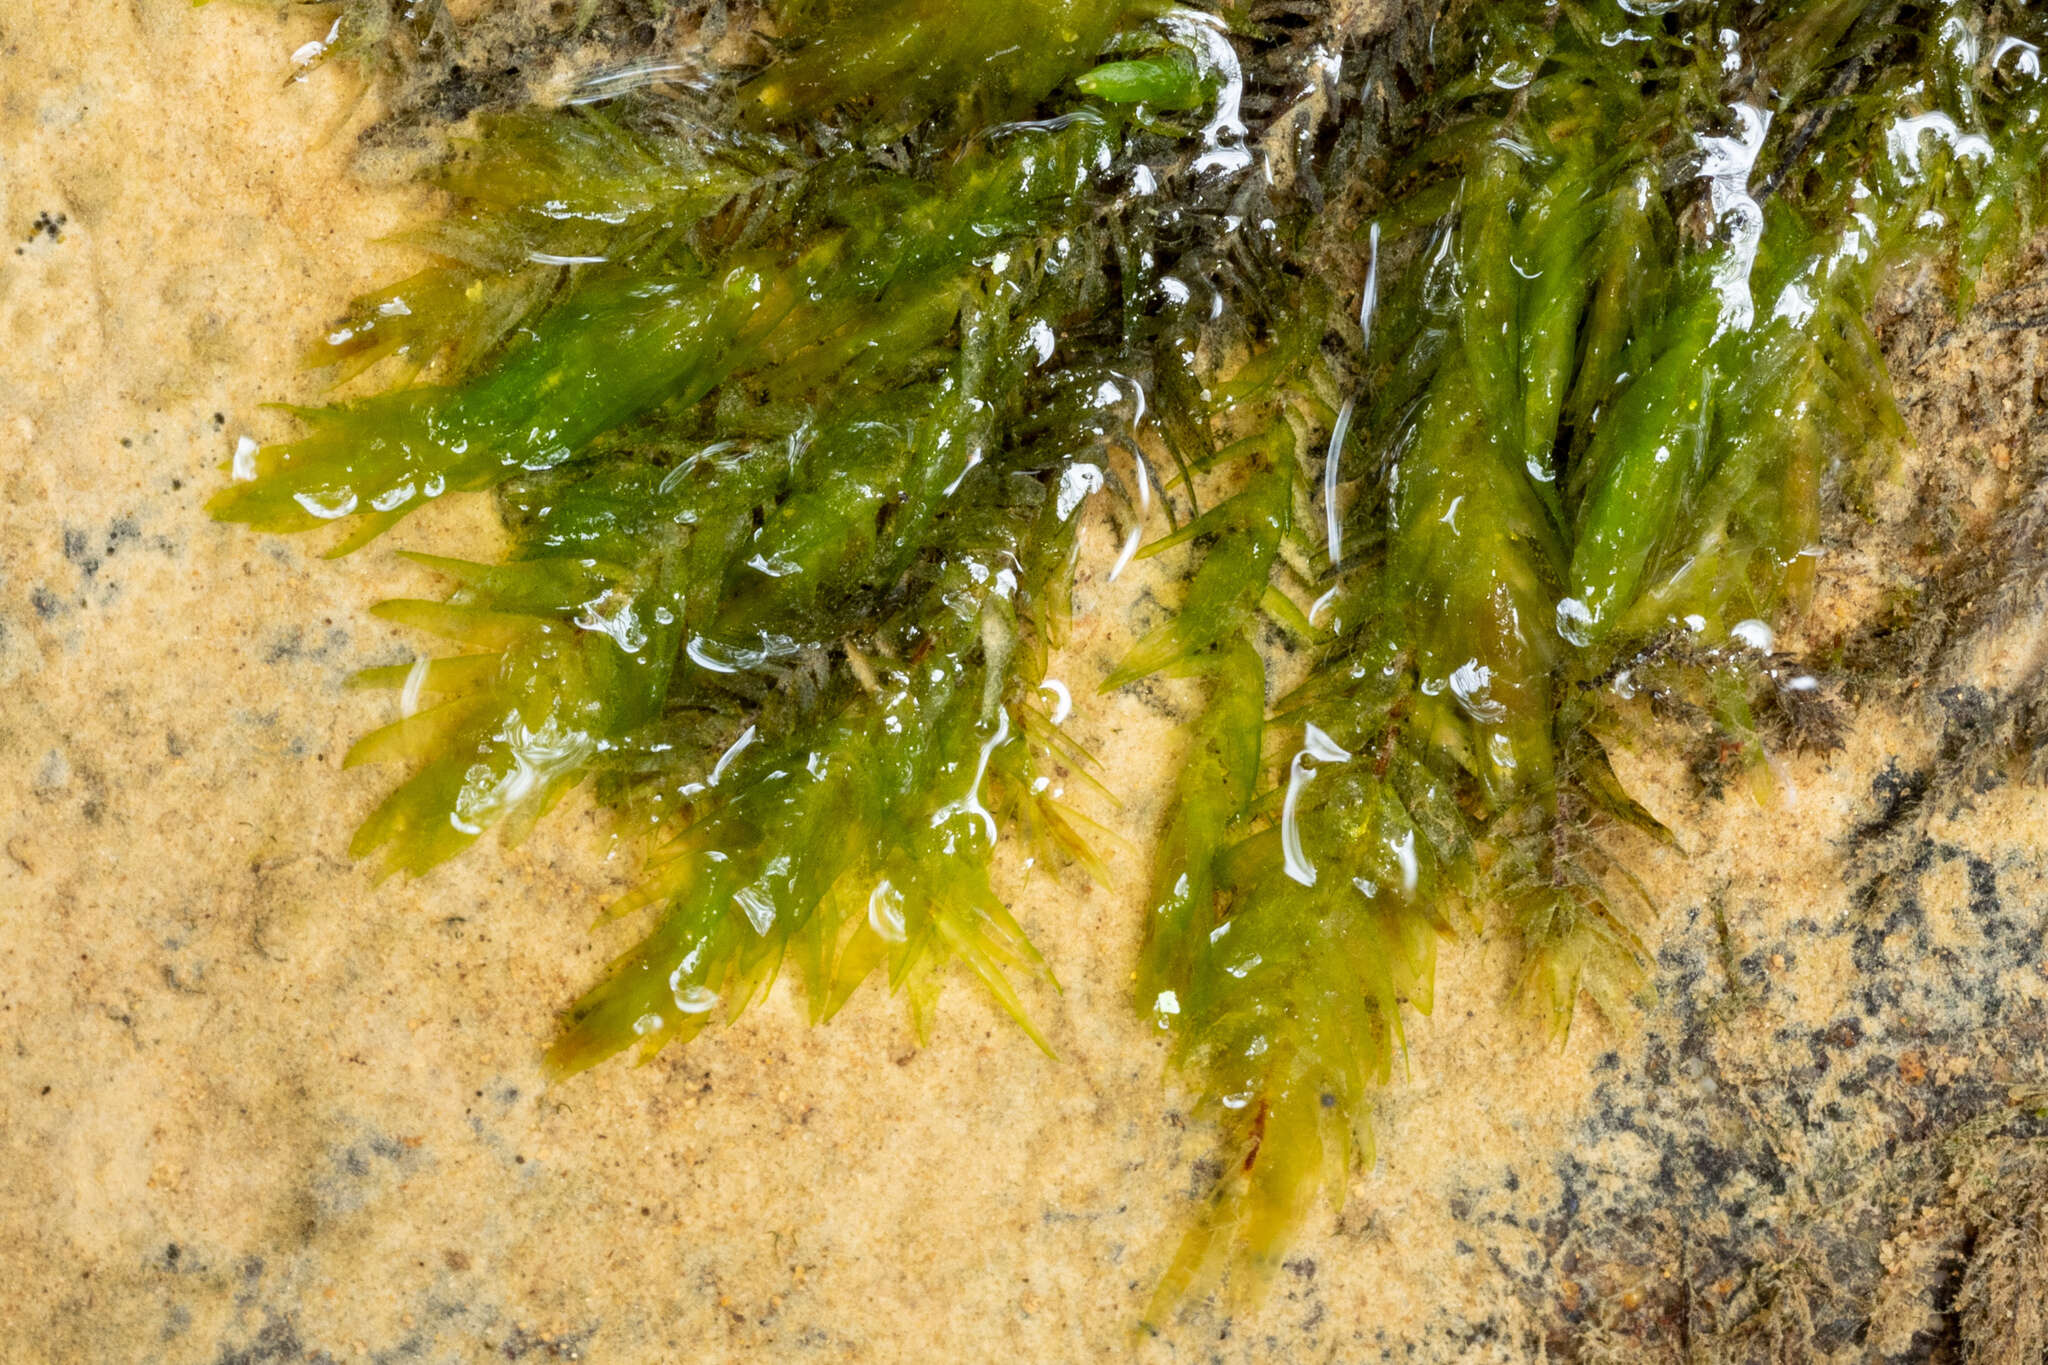 Image of New England fontinalis moss